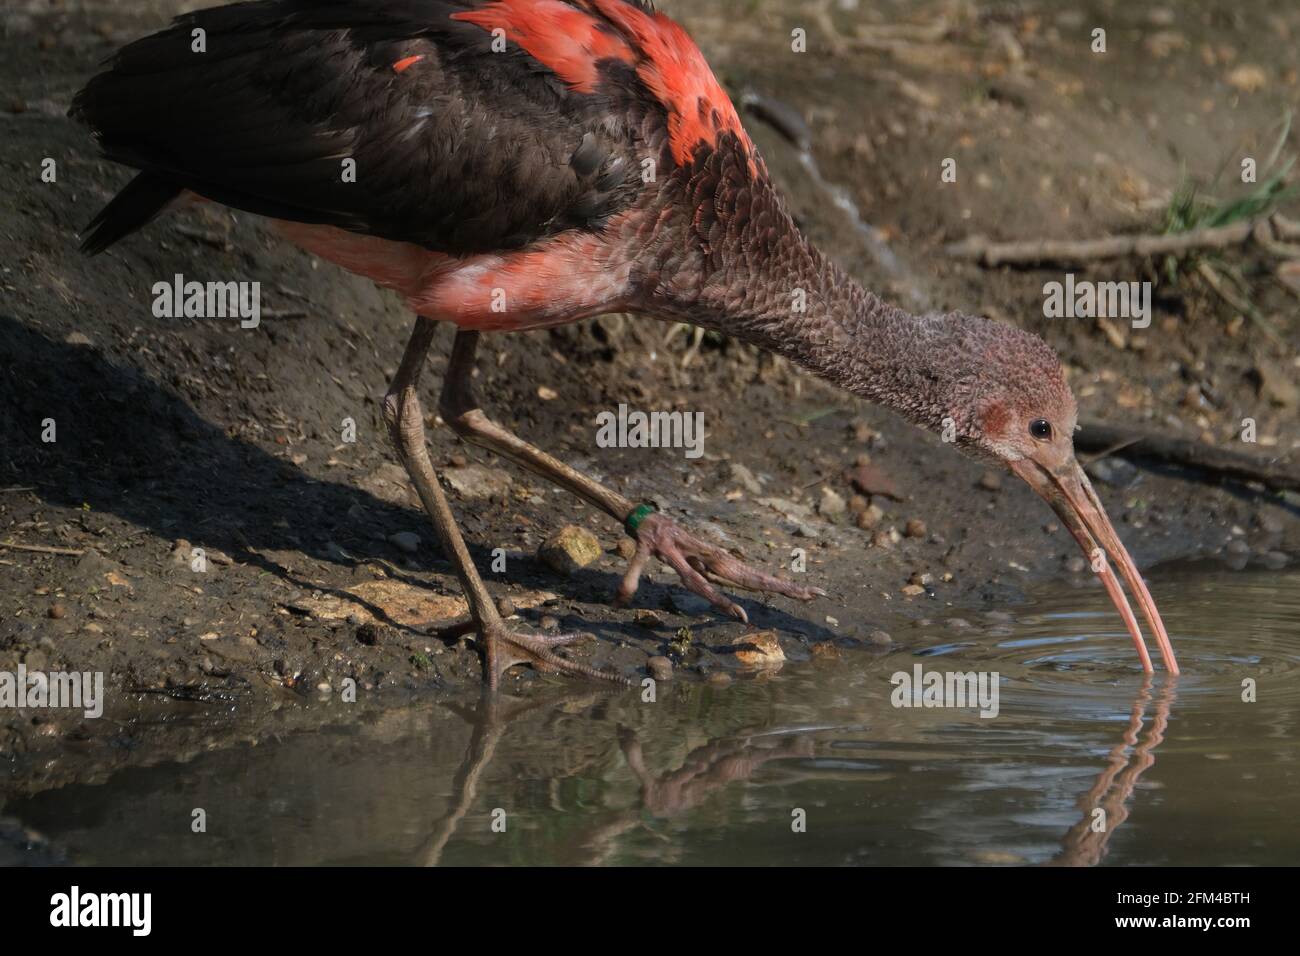 Le scarlet ibis est une espèce d'ibis de la famille des oiseaux Threskiornithidae. Il habite l'Amérique du Sud tropicale et une partie des Caraïbes. Jeune oiseau. Banque D'Images